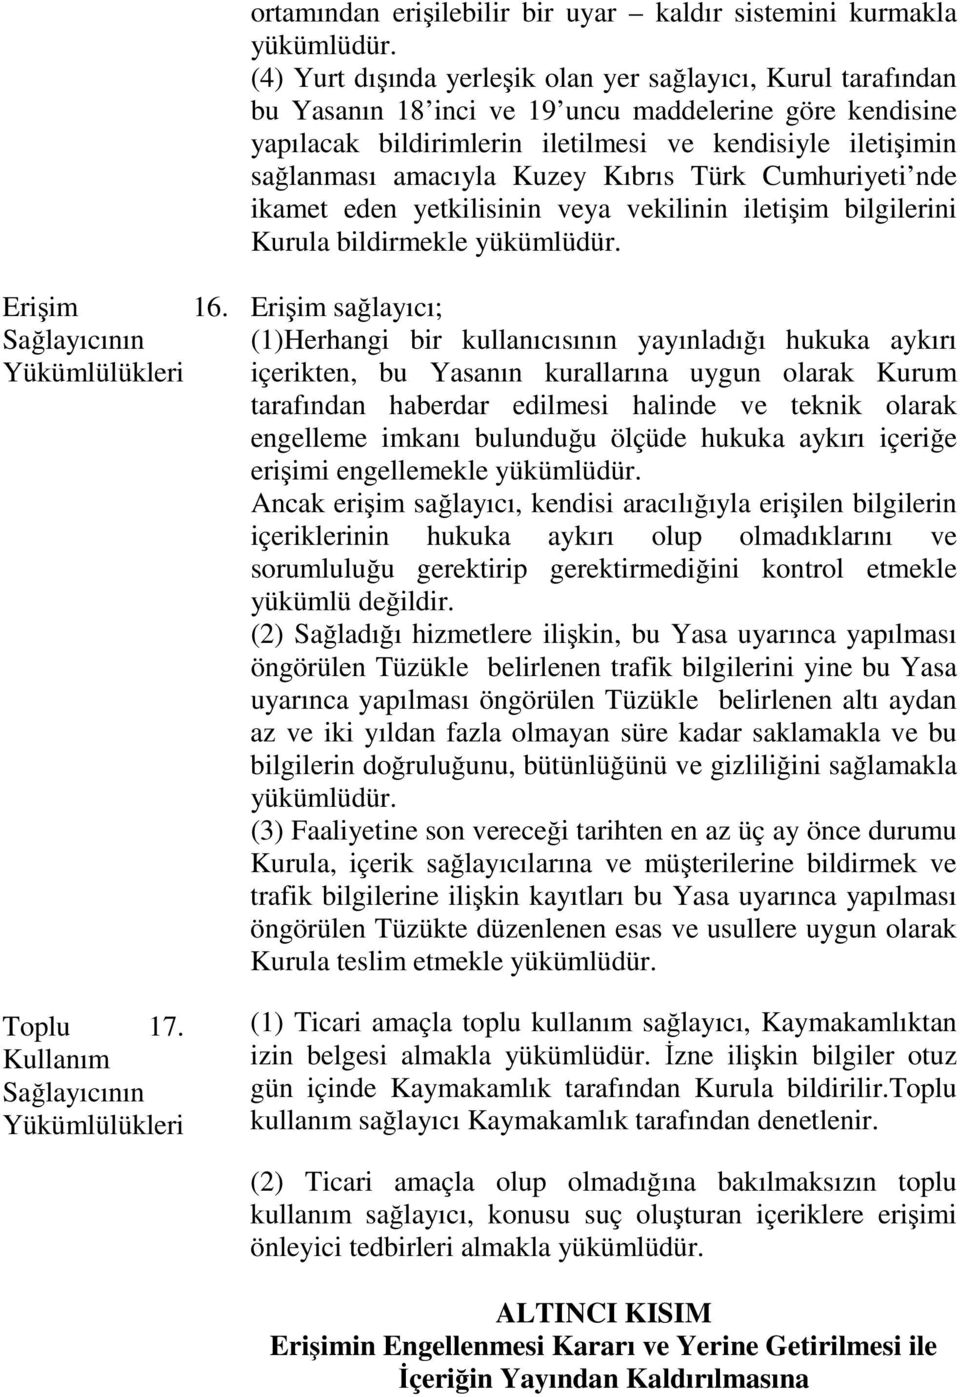 Kuzey Kıbrıs Türk Cumhuriyeti nde ikamet eden yetkilisinin veya vekilinin iletişim bilgilerini Kurula bildirmekle yükümlüdür. Erişim 16. Sağlayıcının Yükümlülükleri Toplu 17.